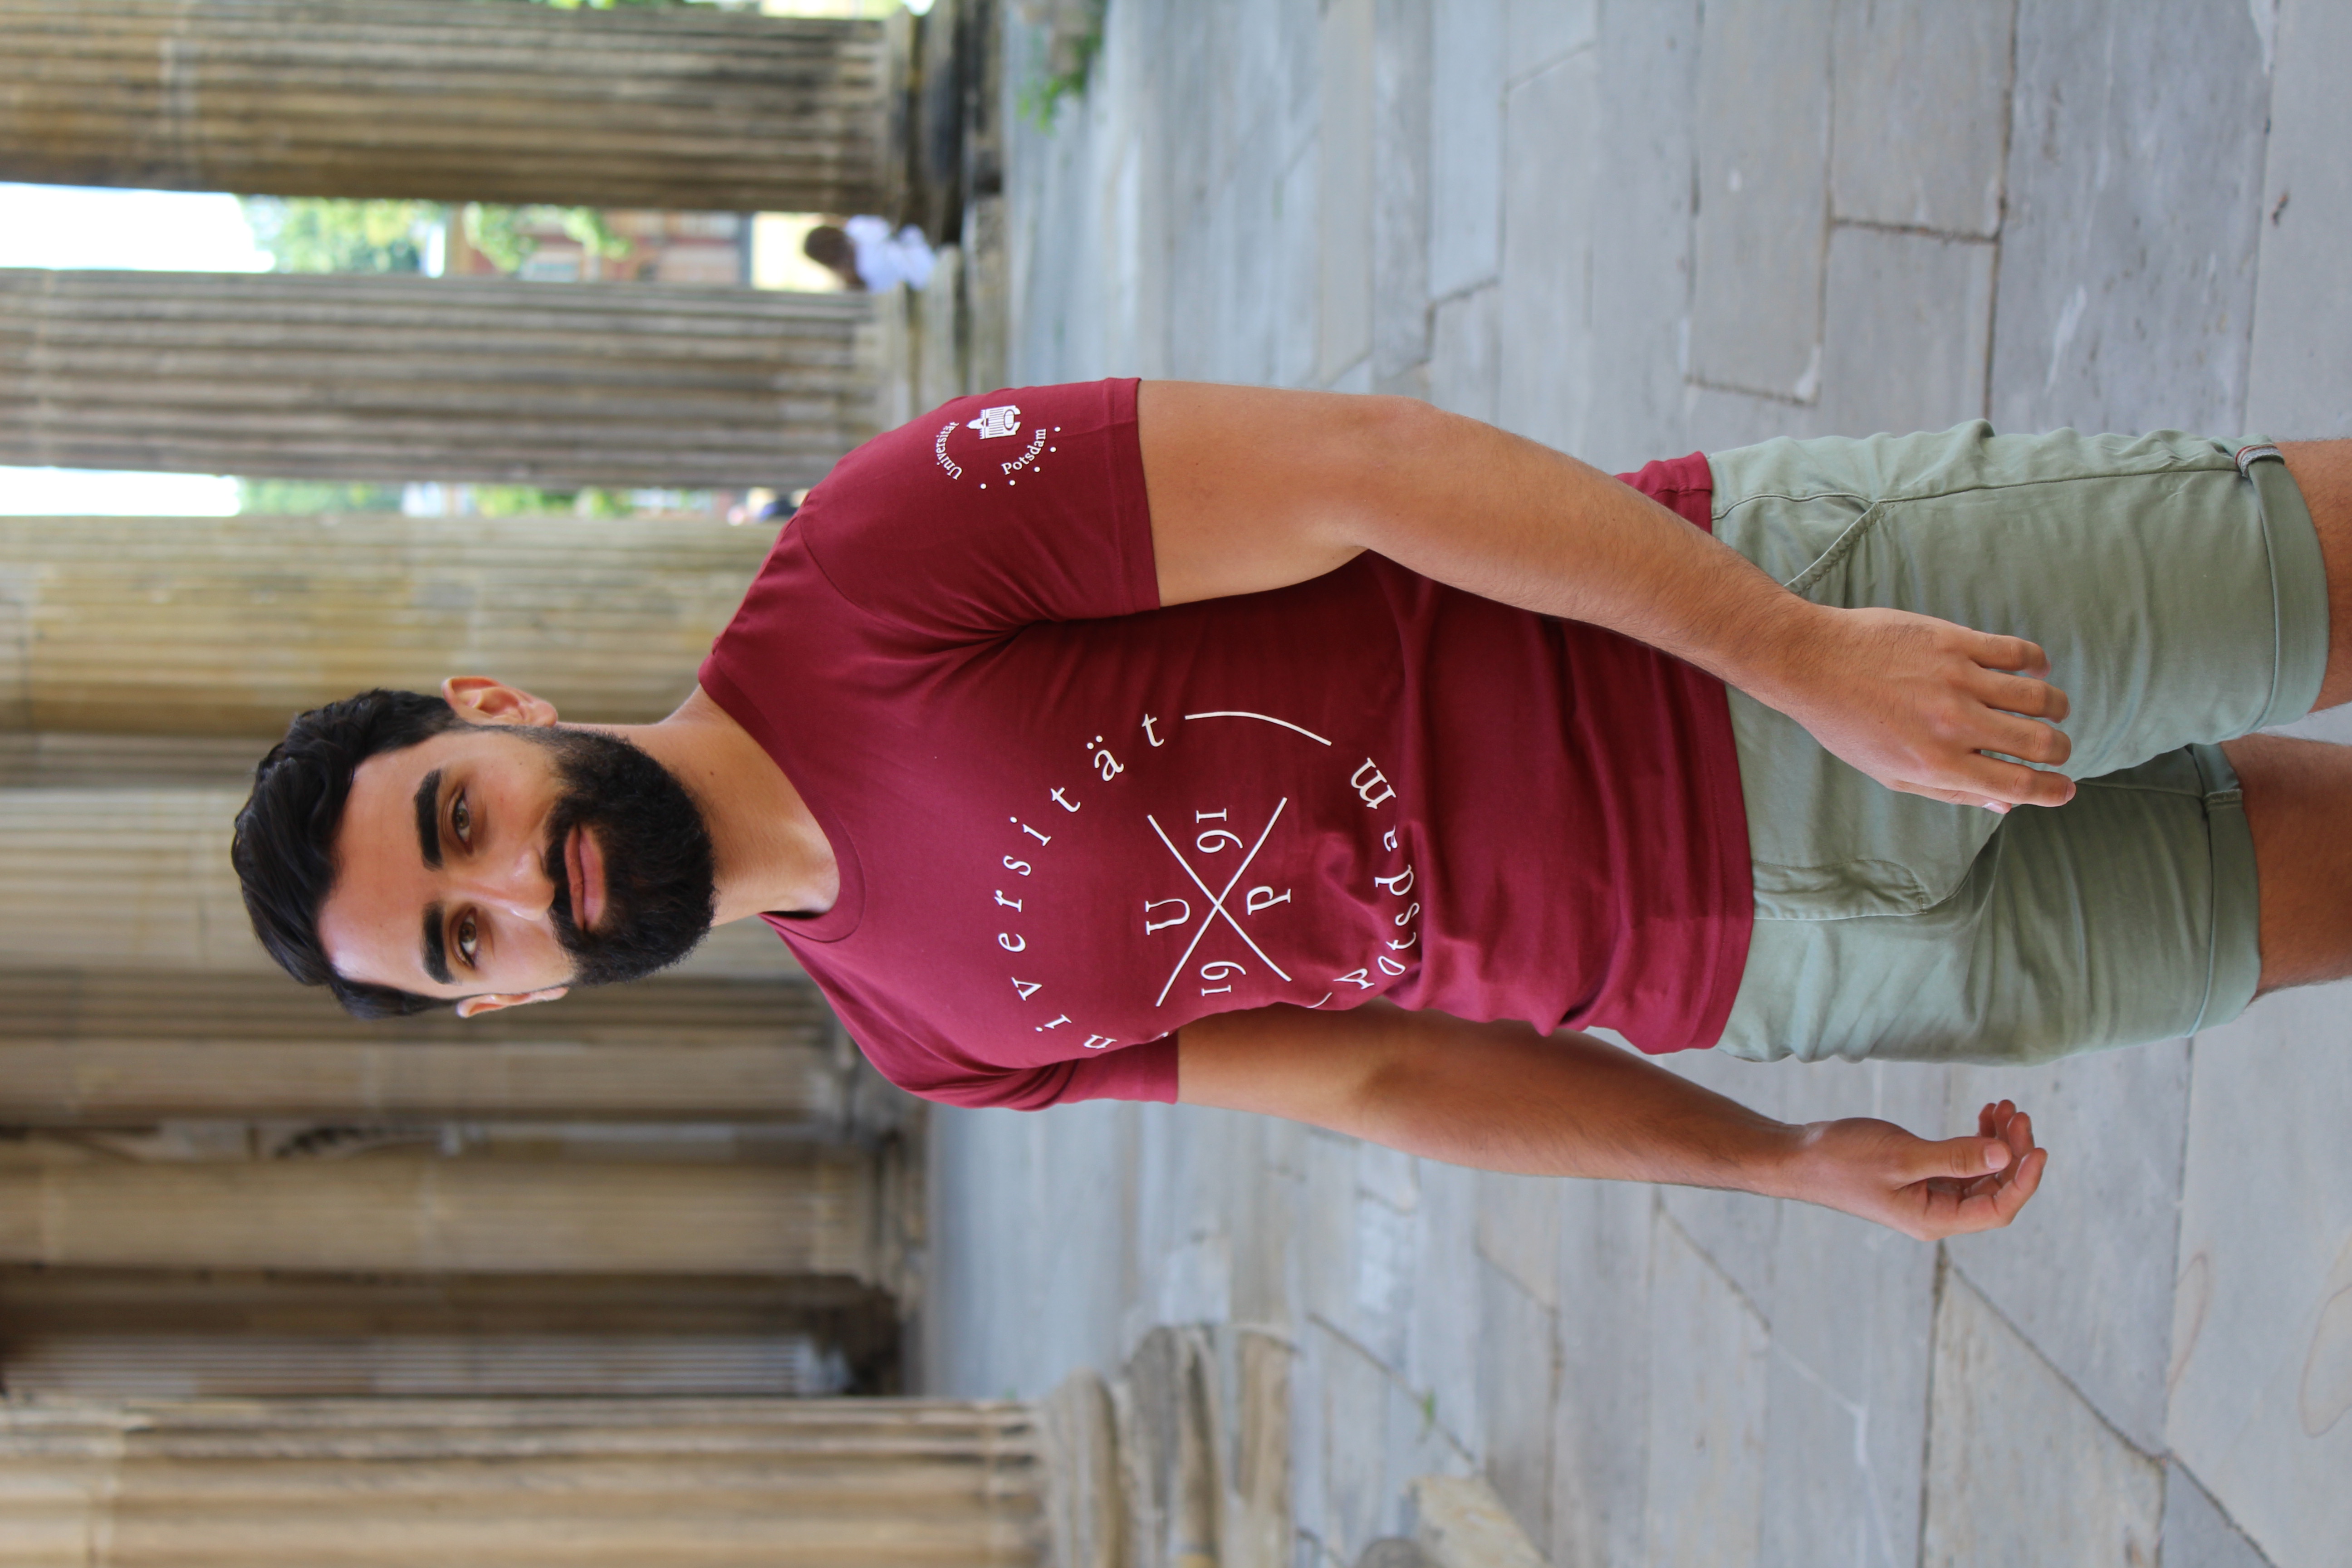 Styler T-shirt. Abgebildet ist ein junger Mann, der im Freien vor Säulen posiert. Er trägt ein burgunder farbenes T-shirt im Design Styler.